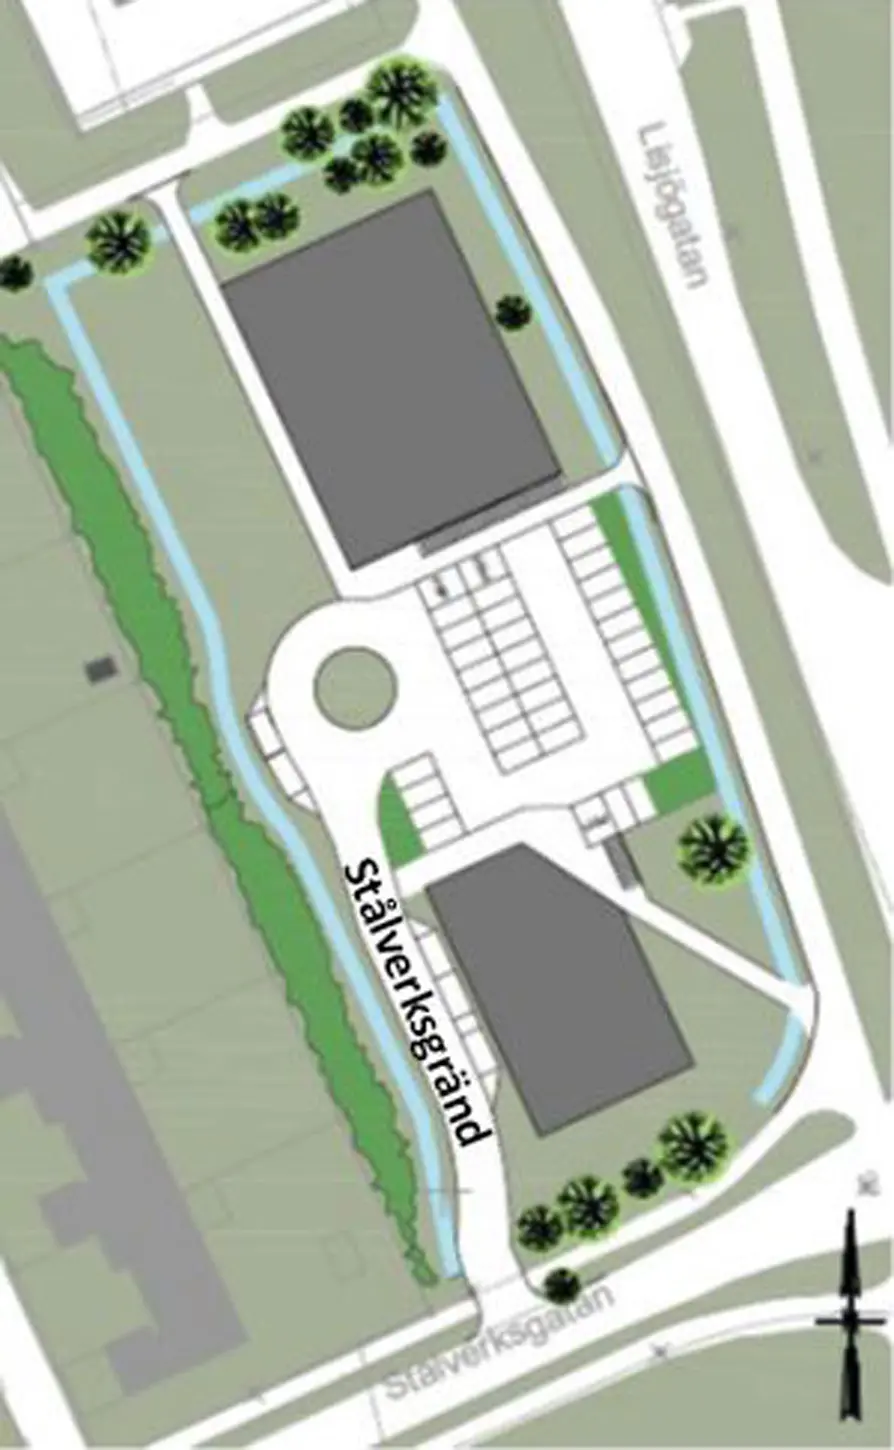 Illustration över planområdet på Bäckby där Stålverksgränd ligger